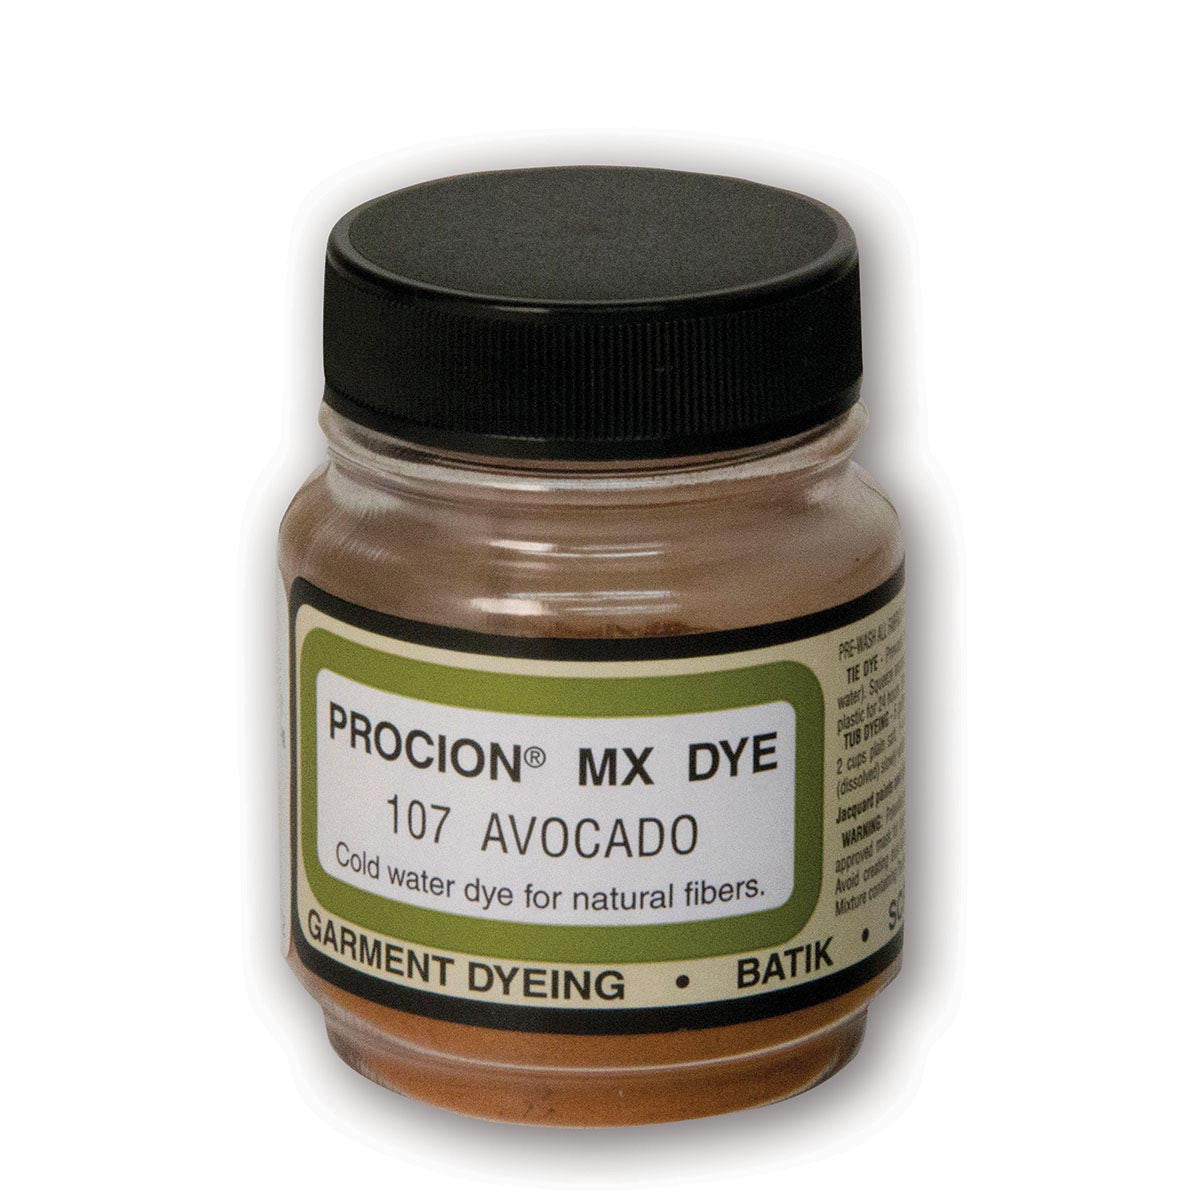 Jacquard - Procion MX Dye - Stoff Textil - Avocado 107